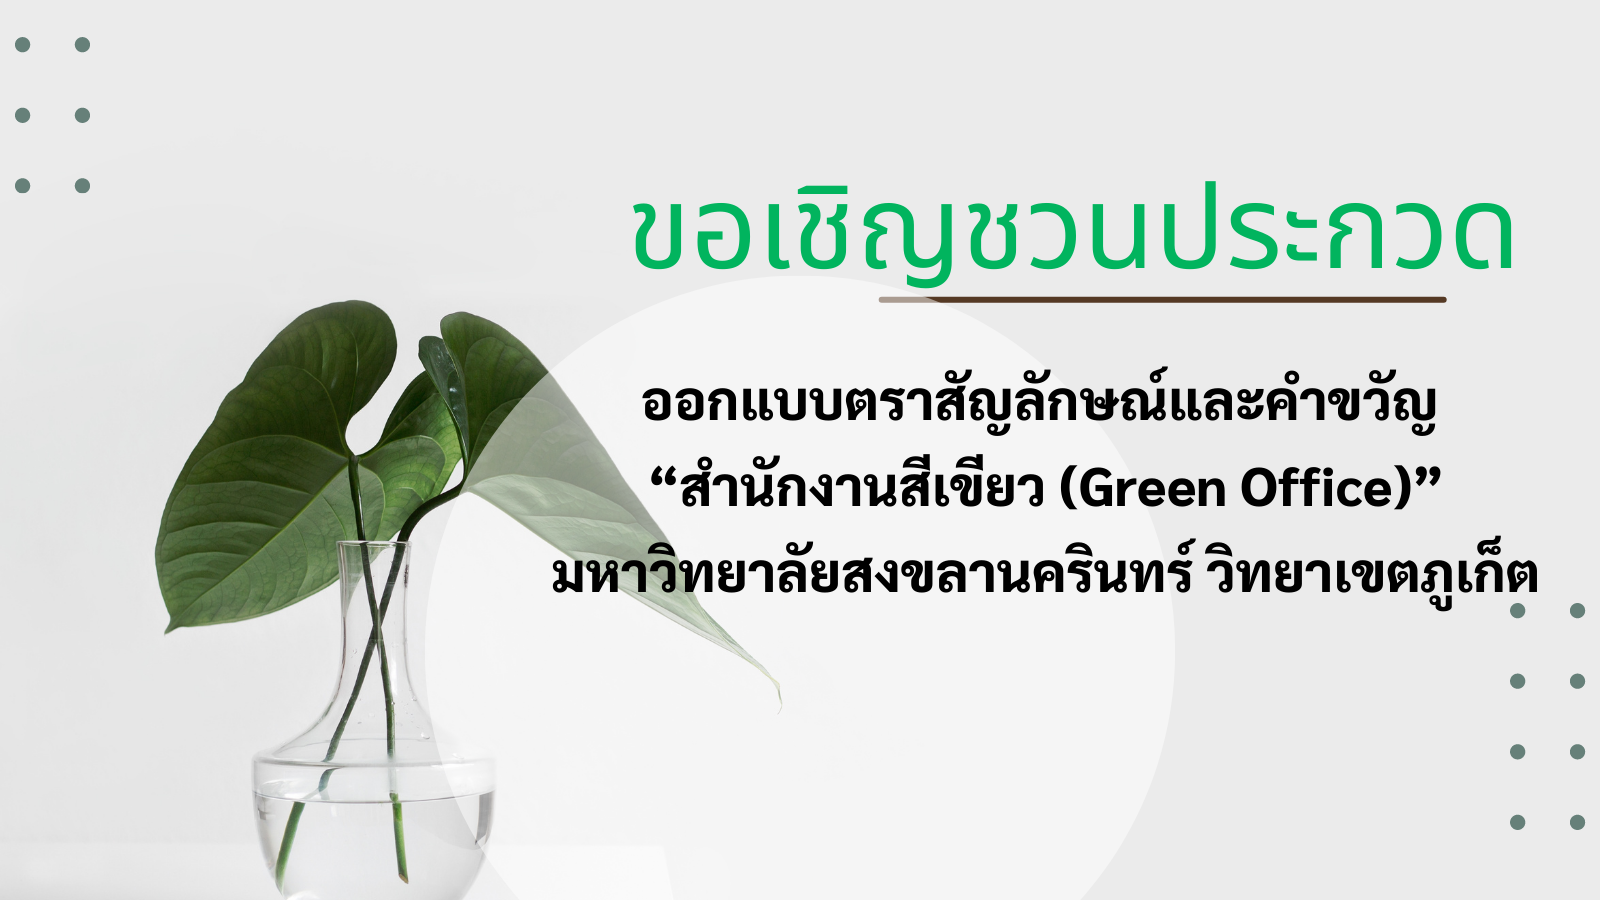 ขอเชิญชวนประกวดออกแบบตราสัญลักษณ์และคำขวัญ “สำนักงานสีเขียว (Green Office)”